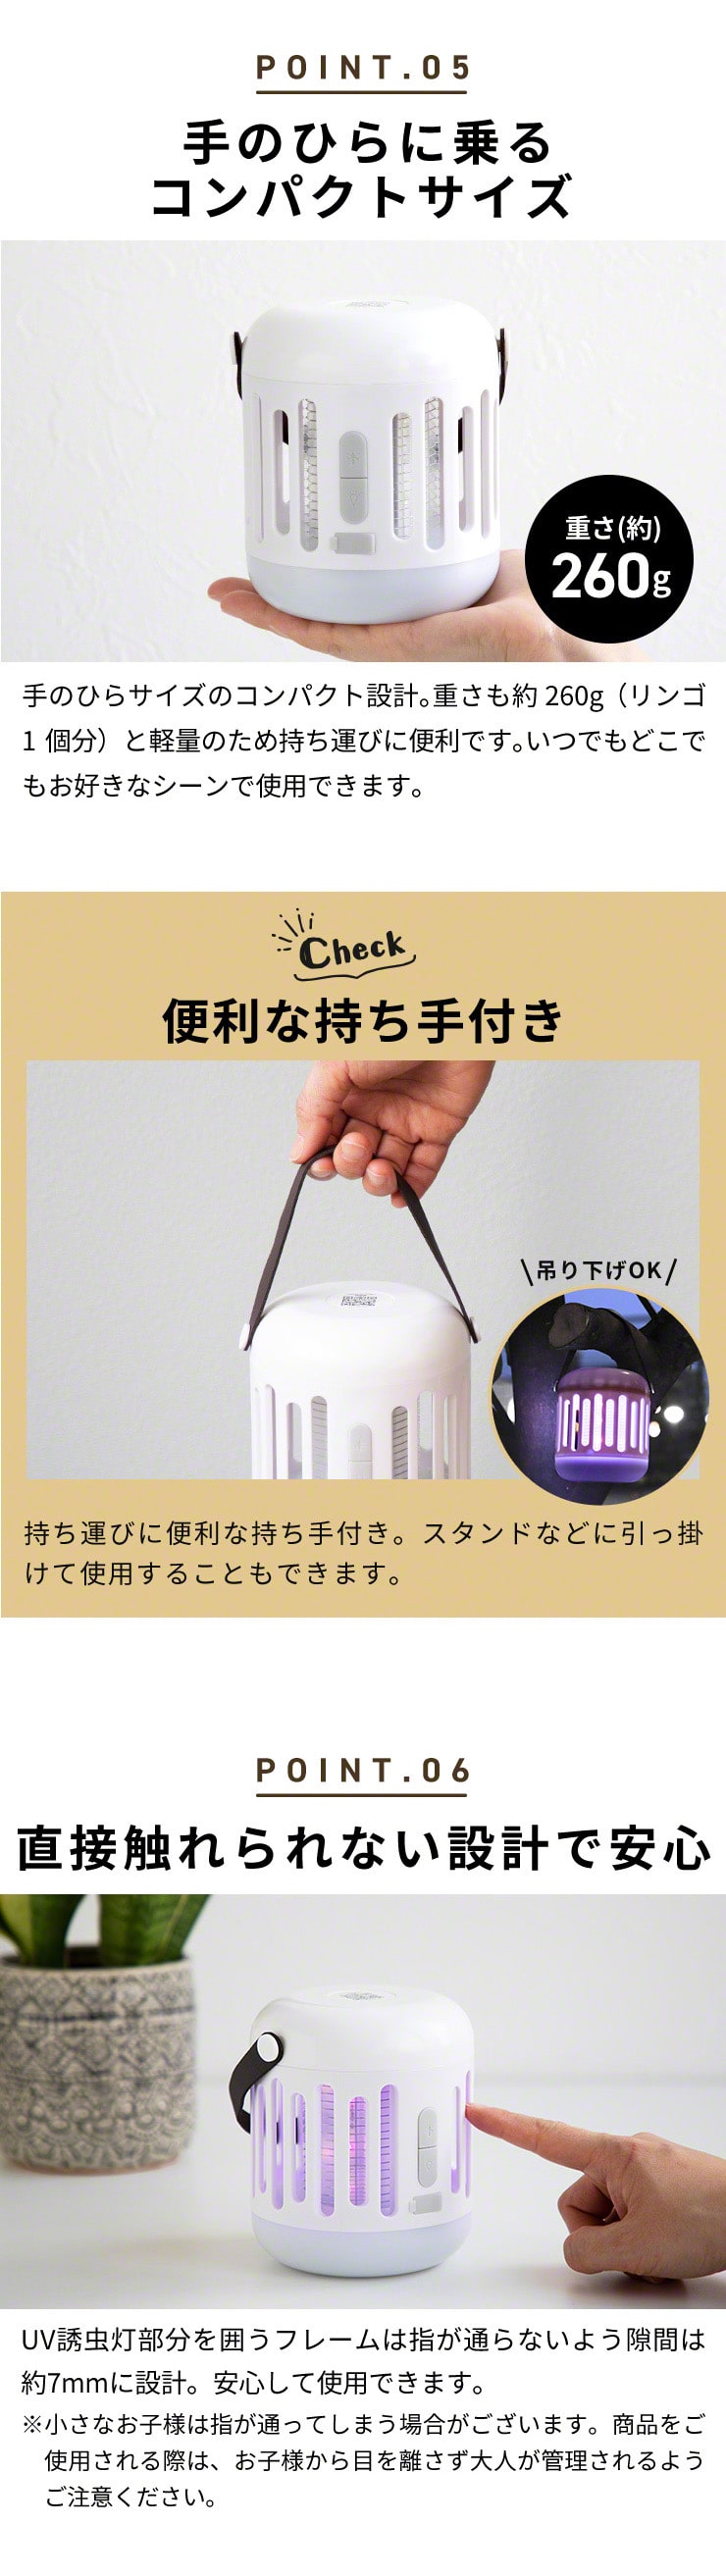 蚊取り器 LEDランタン 虫撃退 殺虫 蚊 コバエ USB 単4電池 モスキートキラーランタン カーポトン